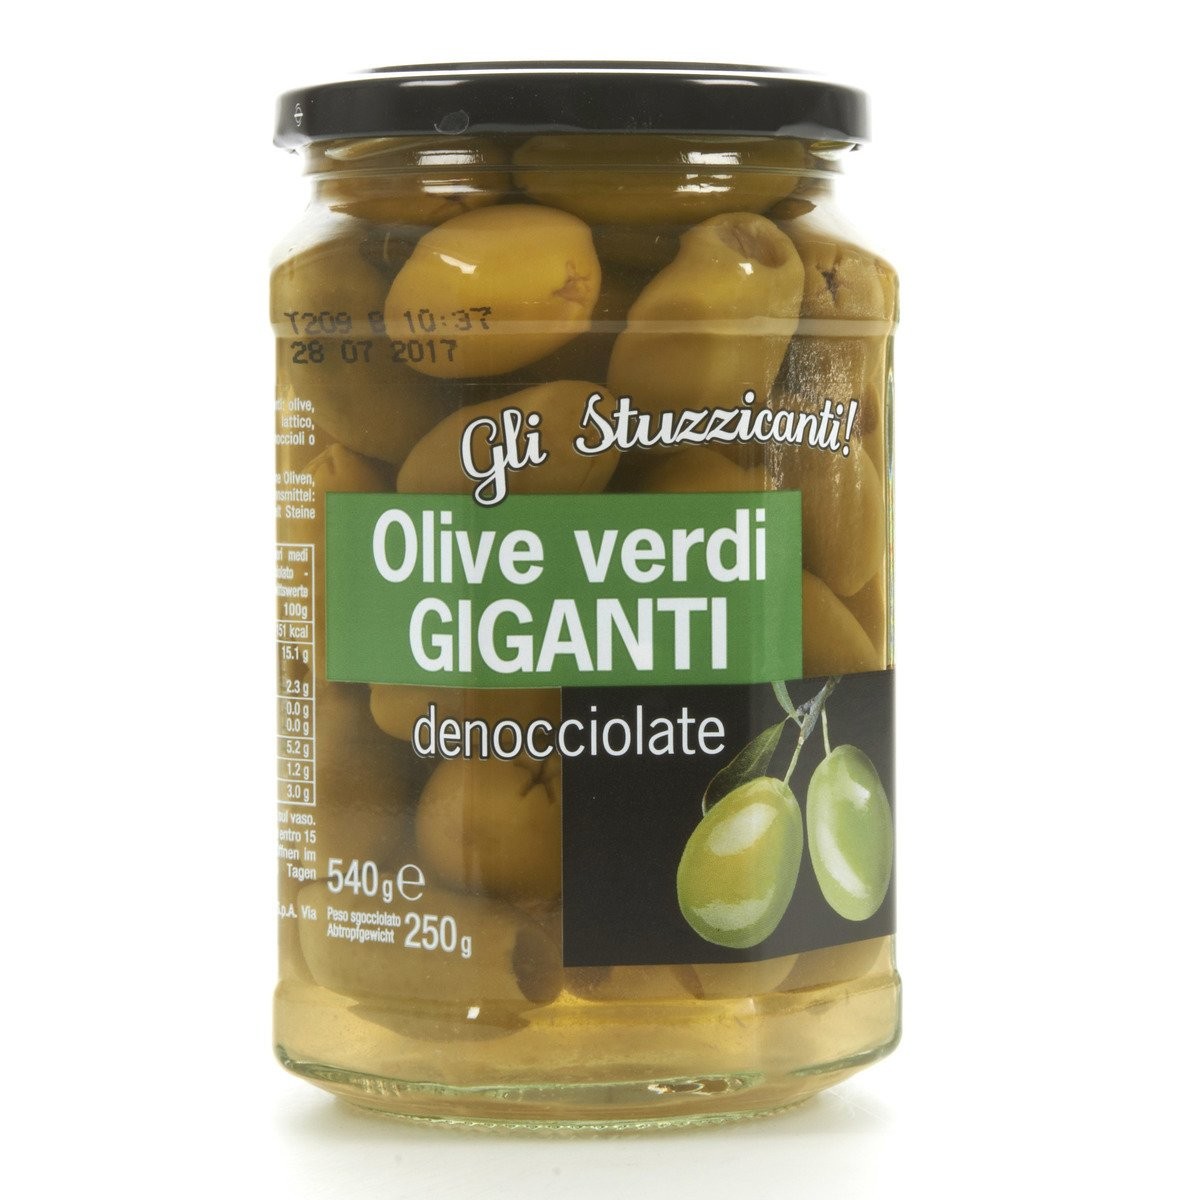 Gli Stuzzicanti Olive verdi giganti denocciolate